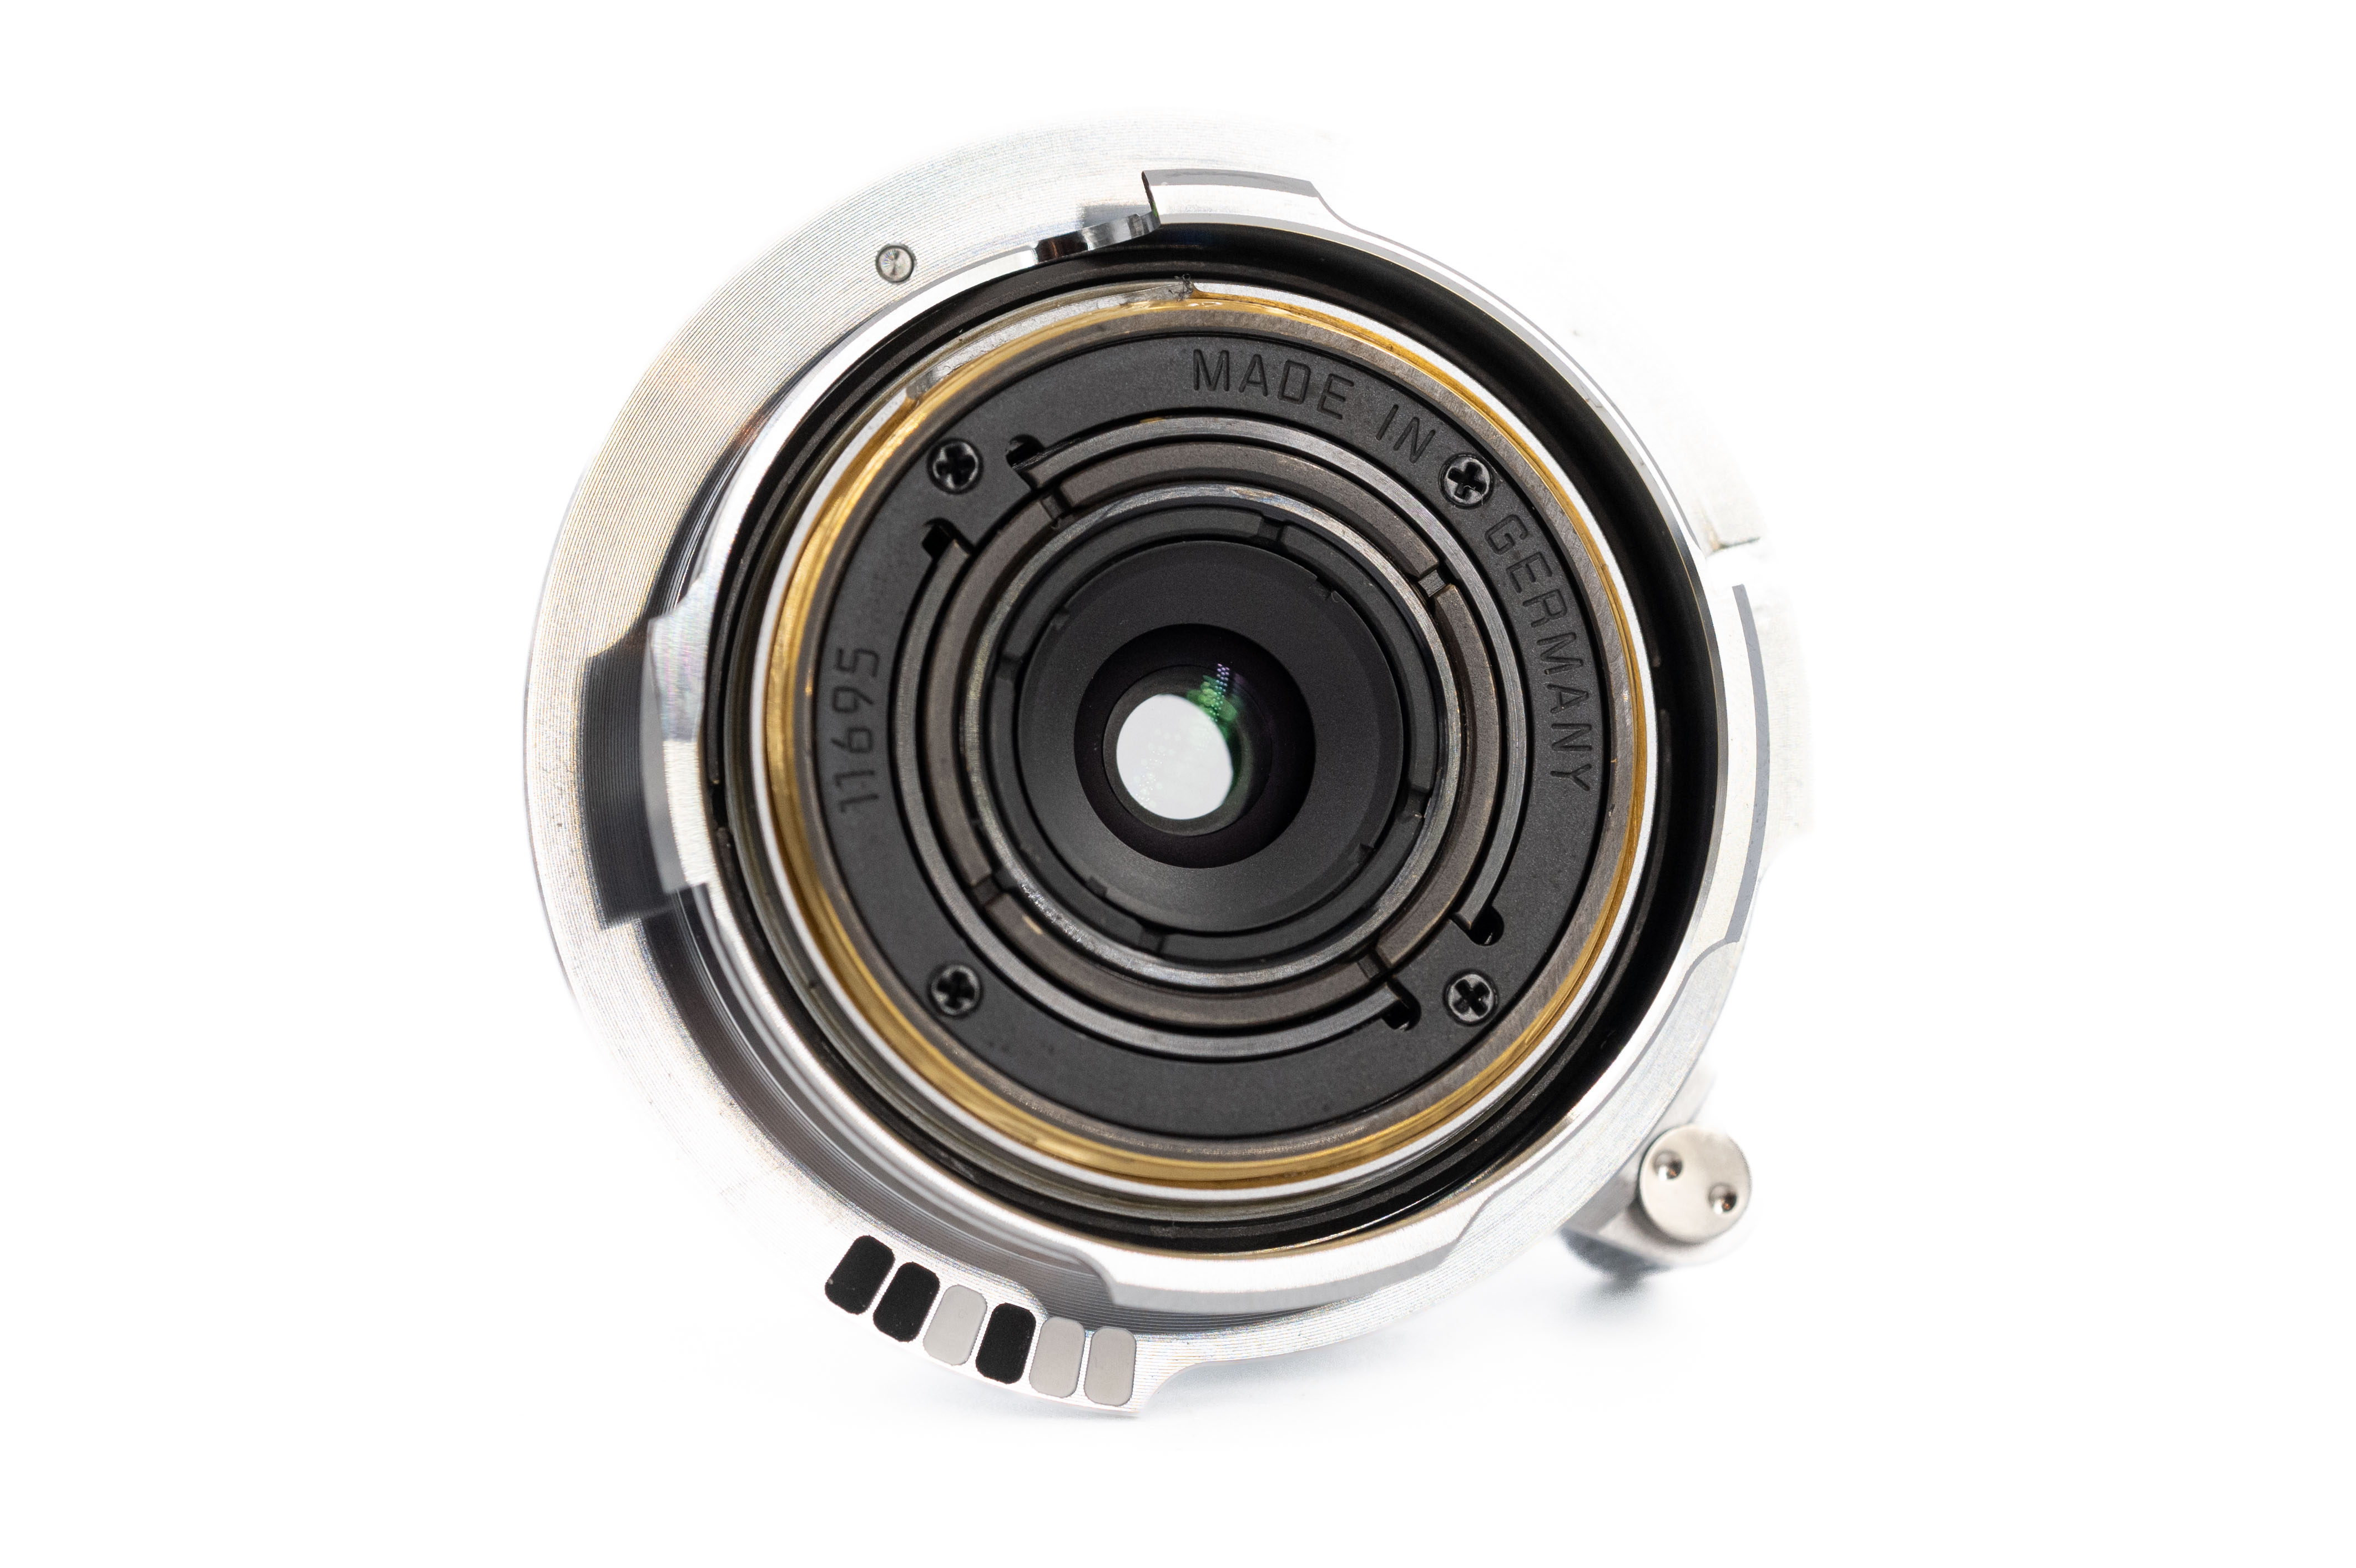 Leica Summaron-M 28mm f/5.6 ASPH 11695